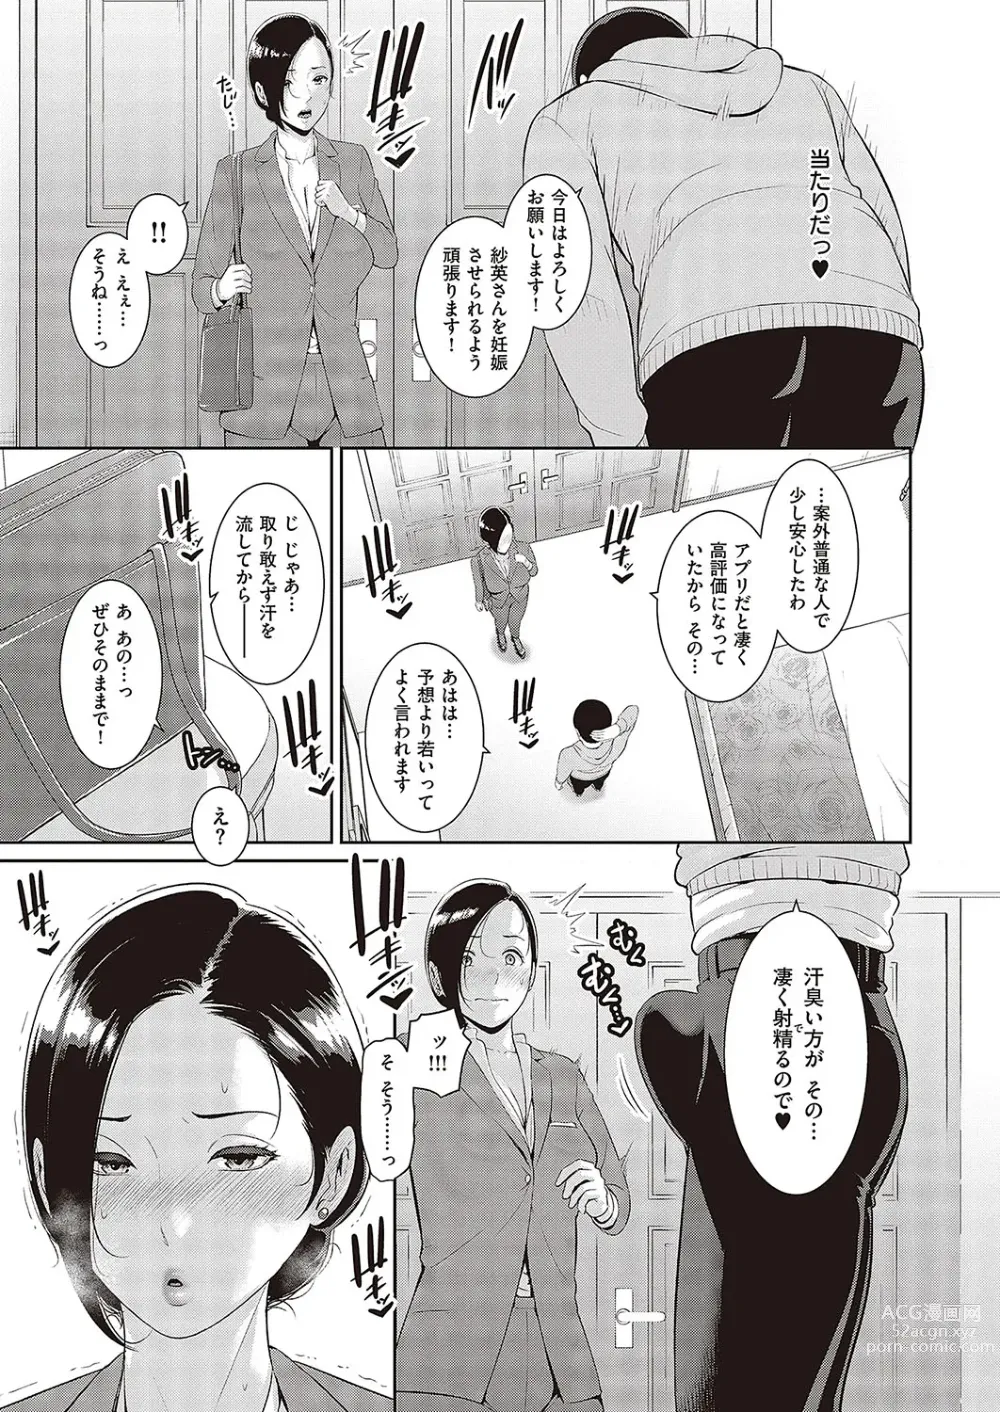 Page 3 of manga 種付けマッチングアプリ Cap.1-2